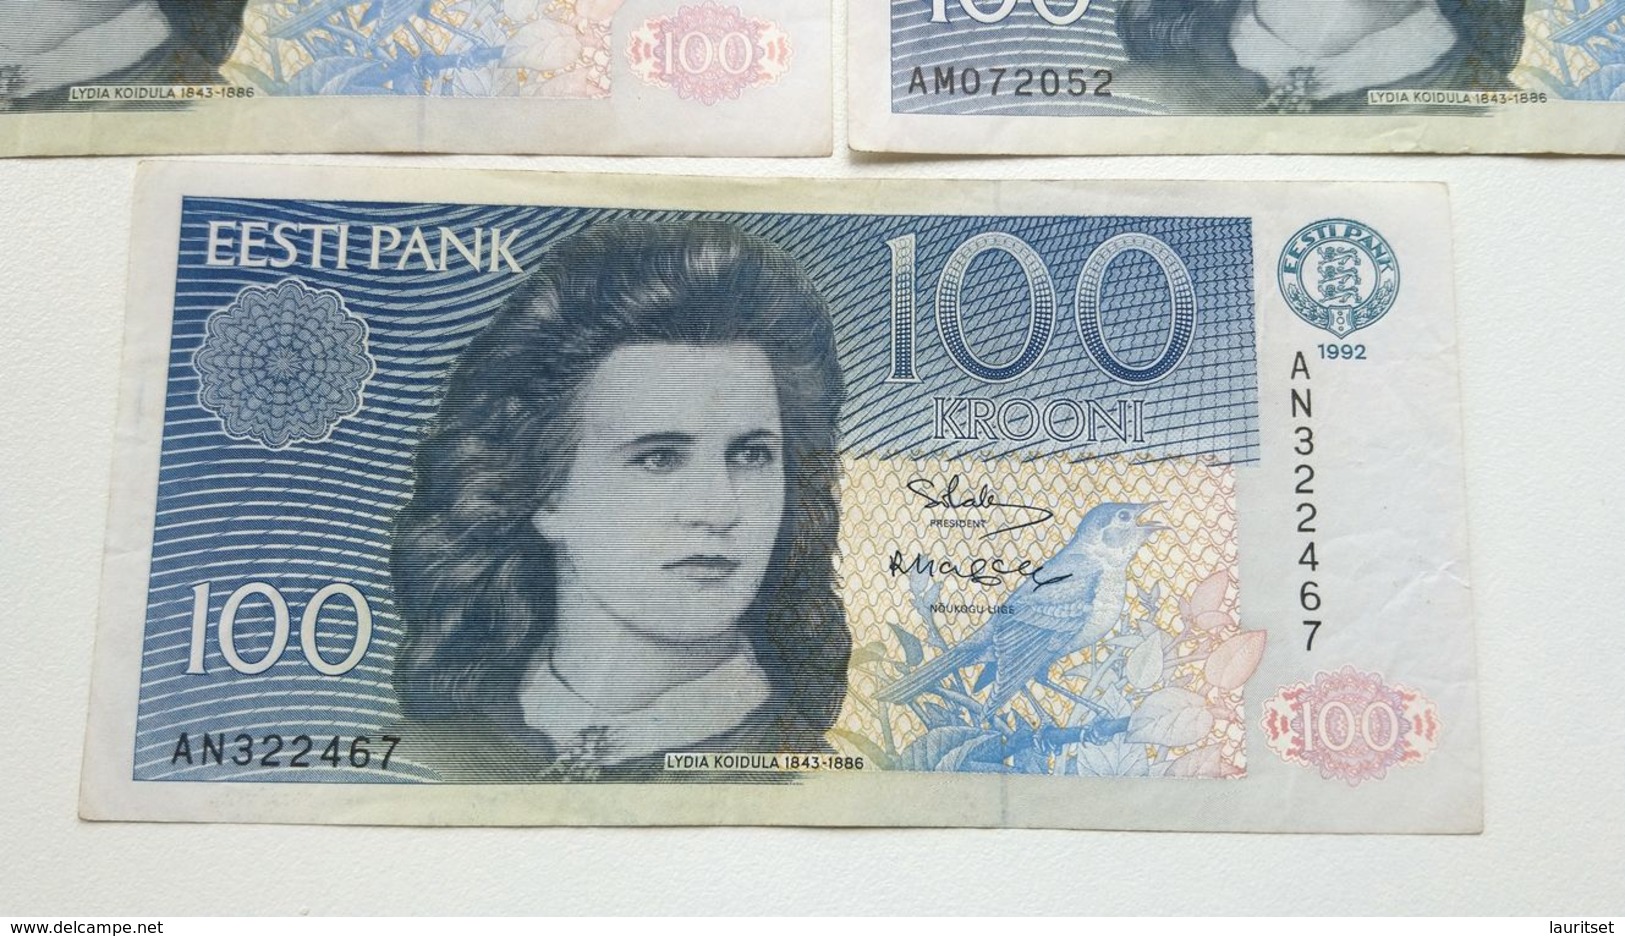 Estland Estonia 100 Krooni 1992 Banknote different series AL & AM & AN & AP & AQ